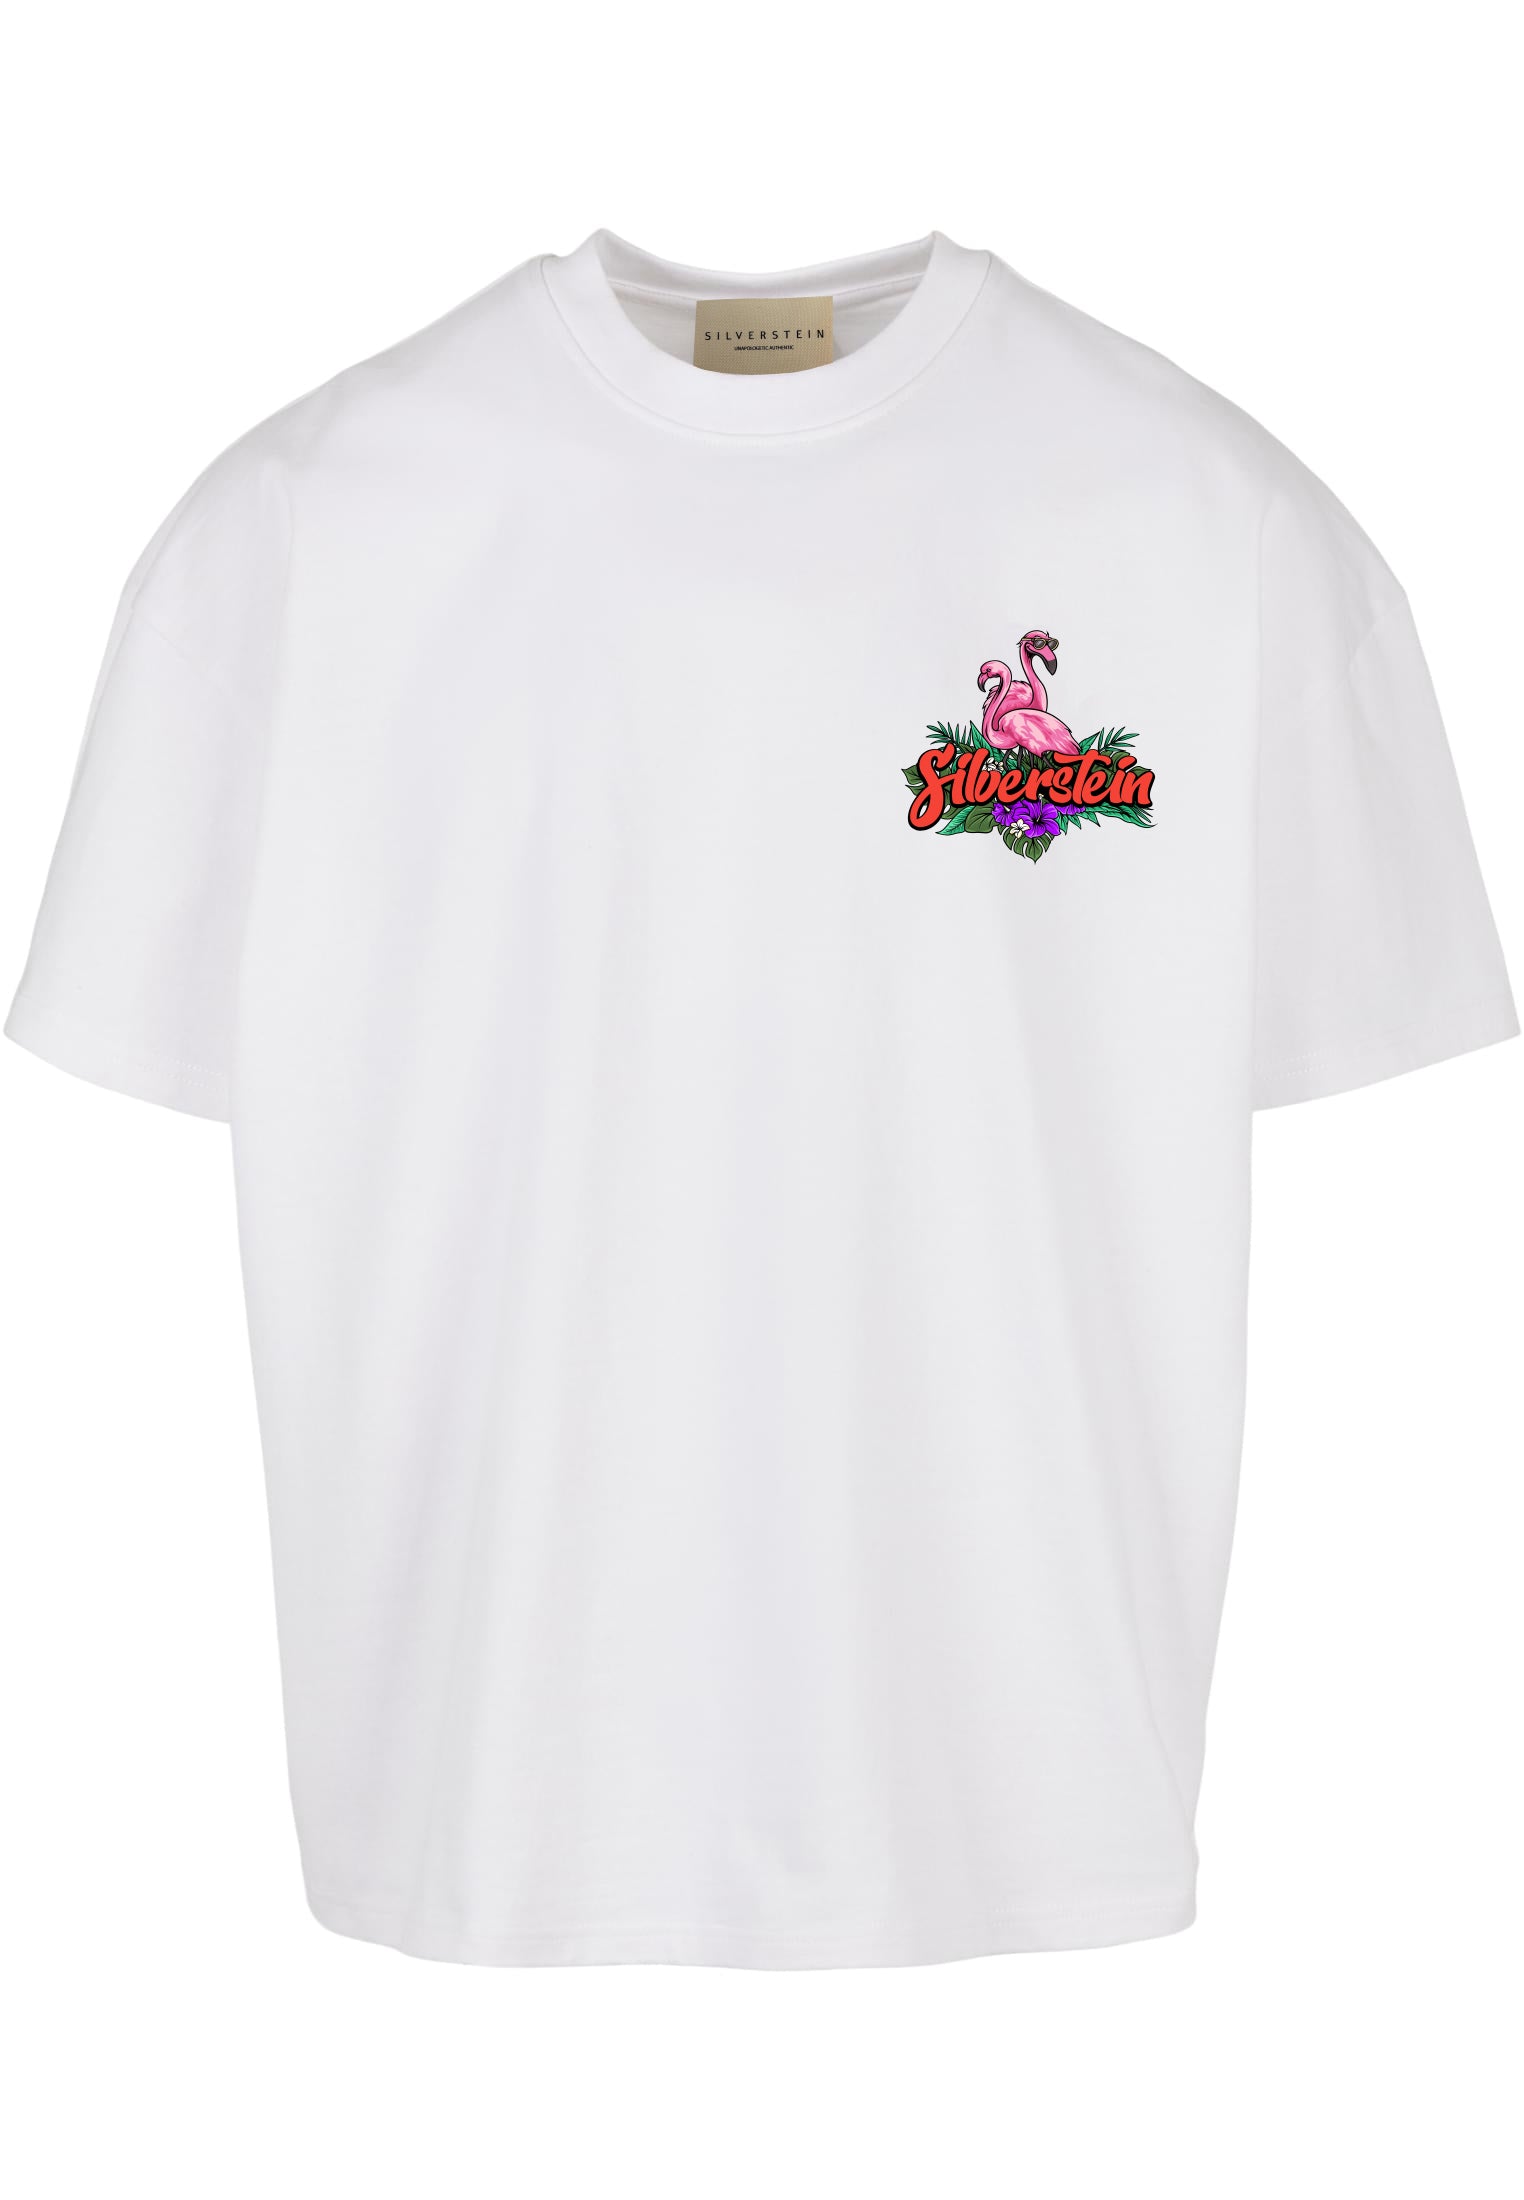 White "Flamingo" Unisex T-shirt